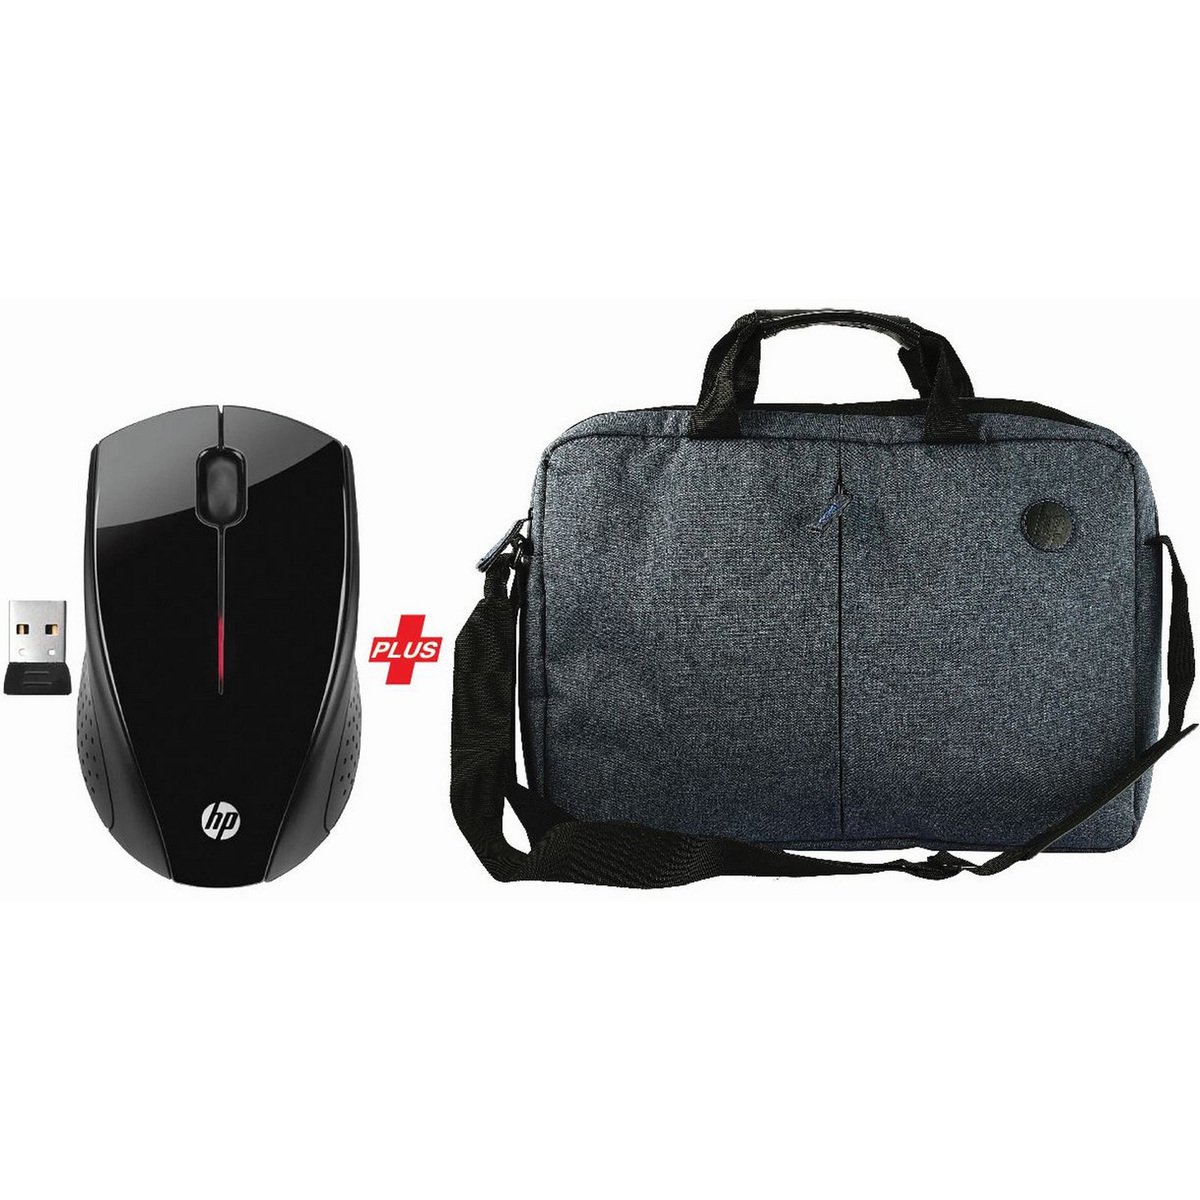 HP Wireless Mouse X3000 + LapTop Bag TPB50